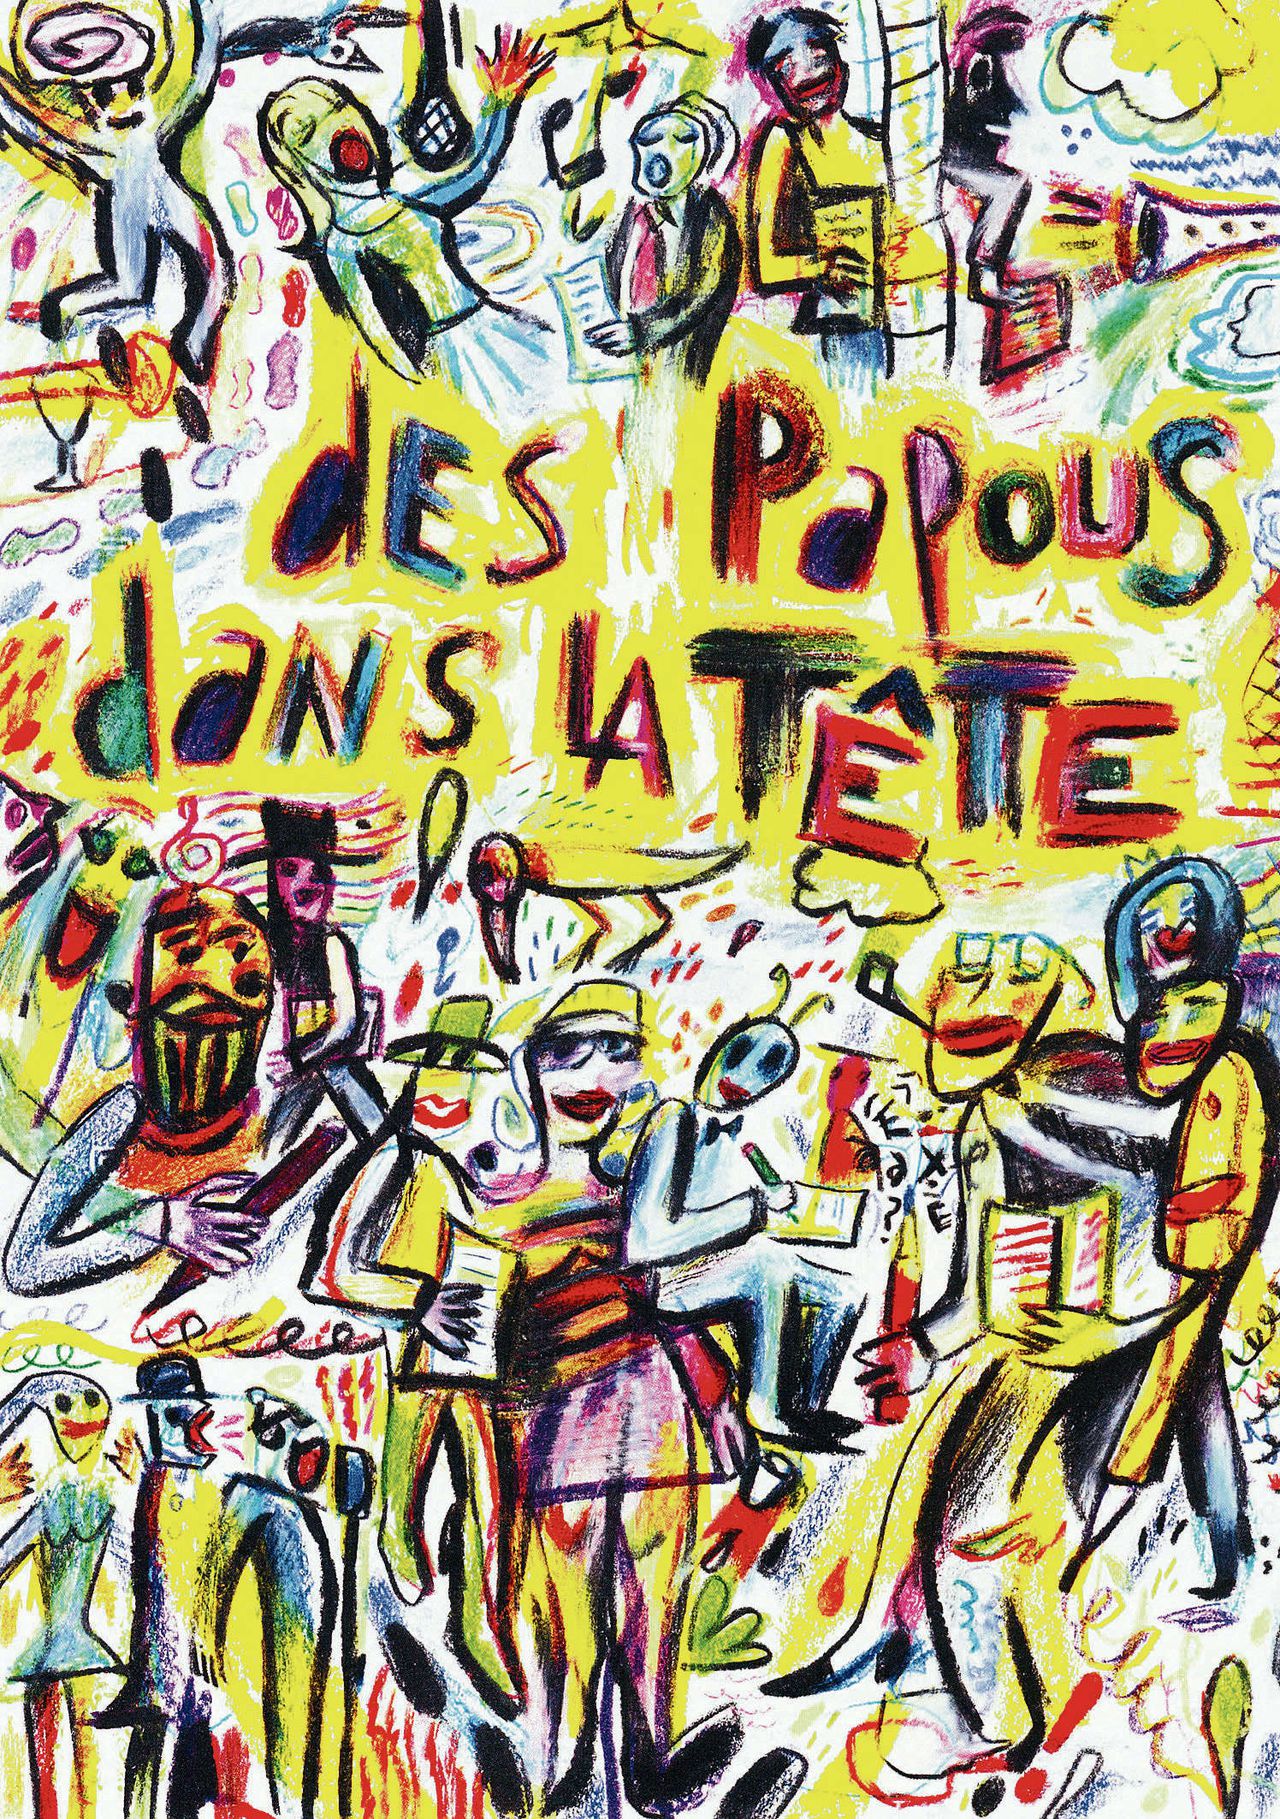 Affiche voor ‘Des papous dans la tête’: literair variété op radiozender France Culture. Illustratie van Ricardo Monser uit het jubileumboek ‘50 ans de France Culture’.